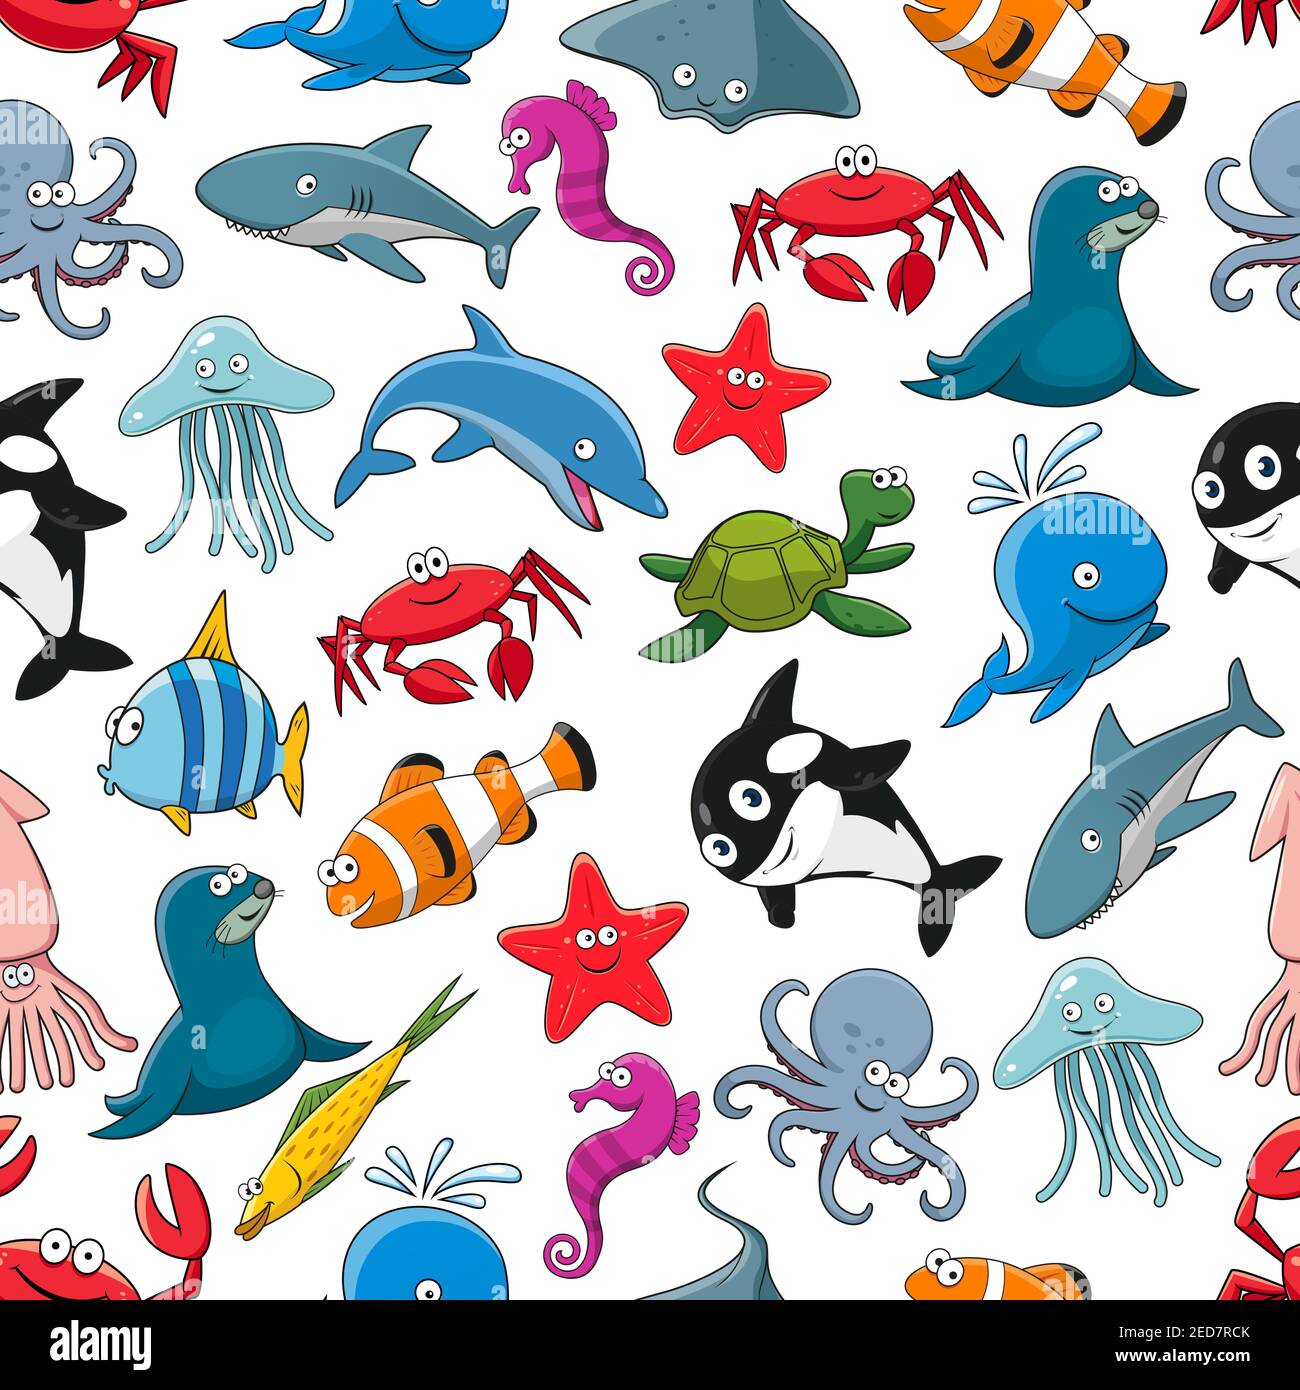 Dibujo de dibujos animados de peces de mar y animales de mar, estrellas de  mar y caballitos de mar, calamares y medusas, focas, delfines y ballenas de  tiburón, cangrejos de langosta, pulpo,